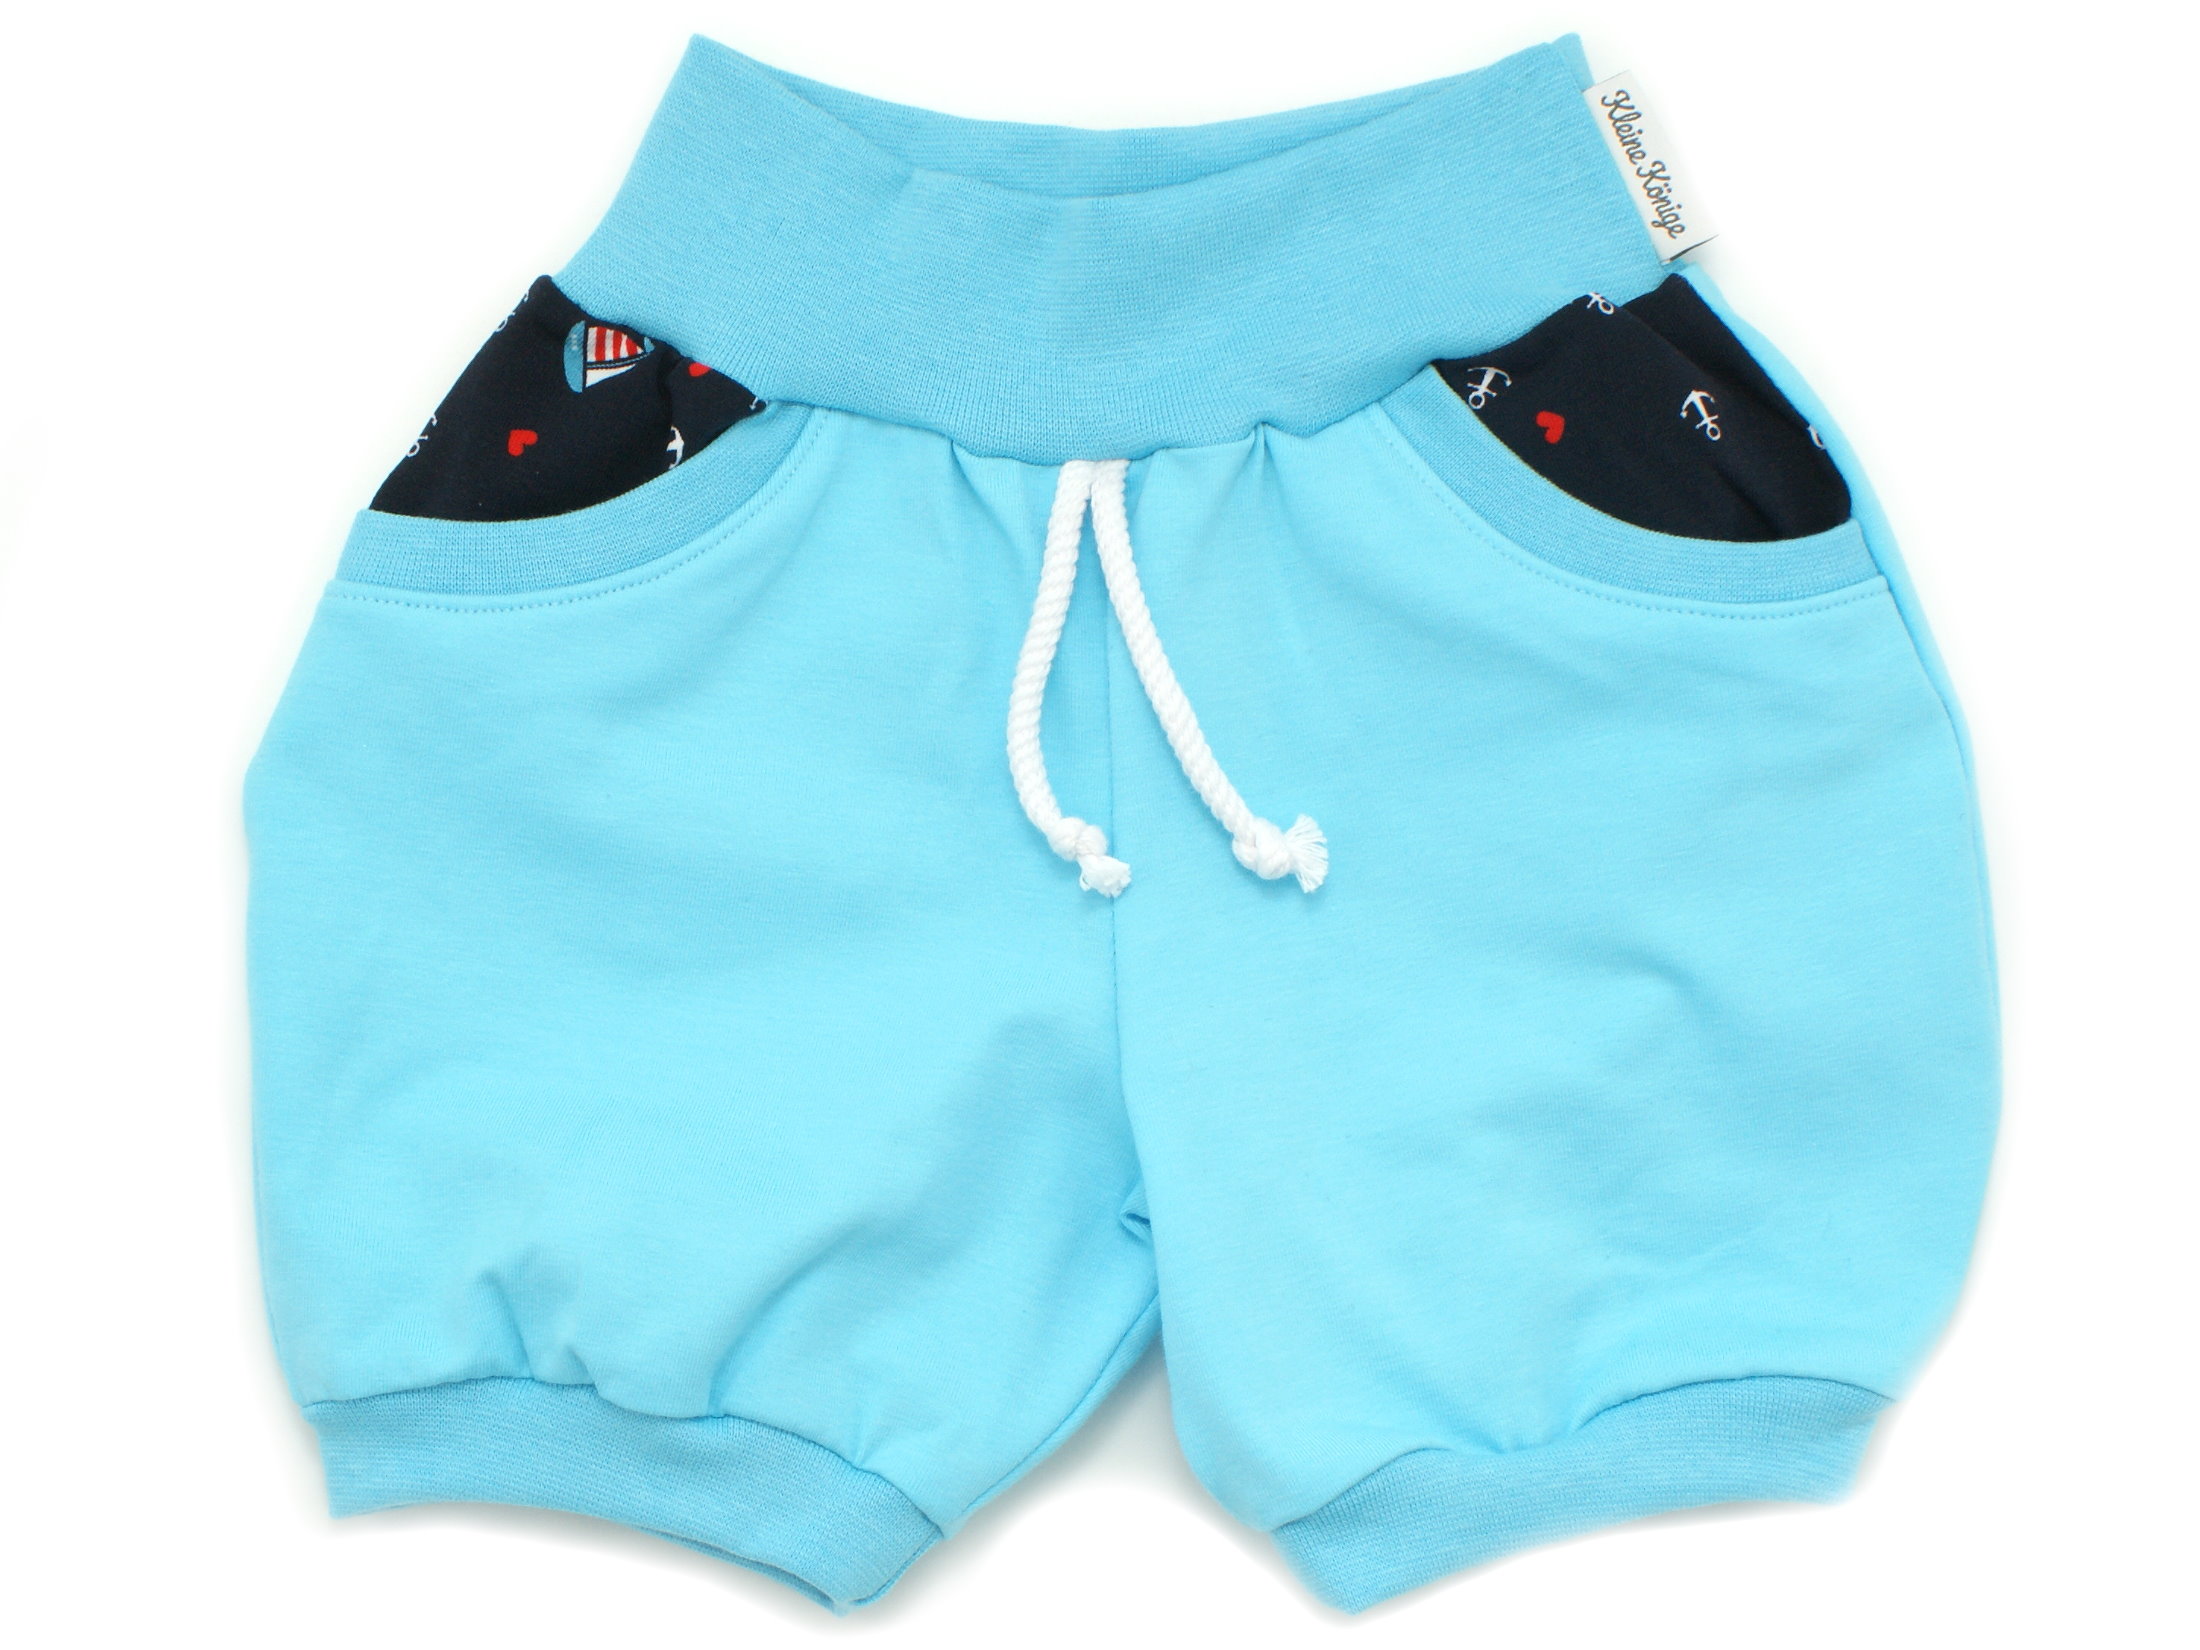 Kinder Sommer Shorts mit Taschen "Segelliebe" marineblau türkis